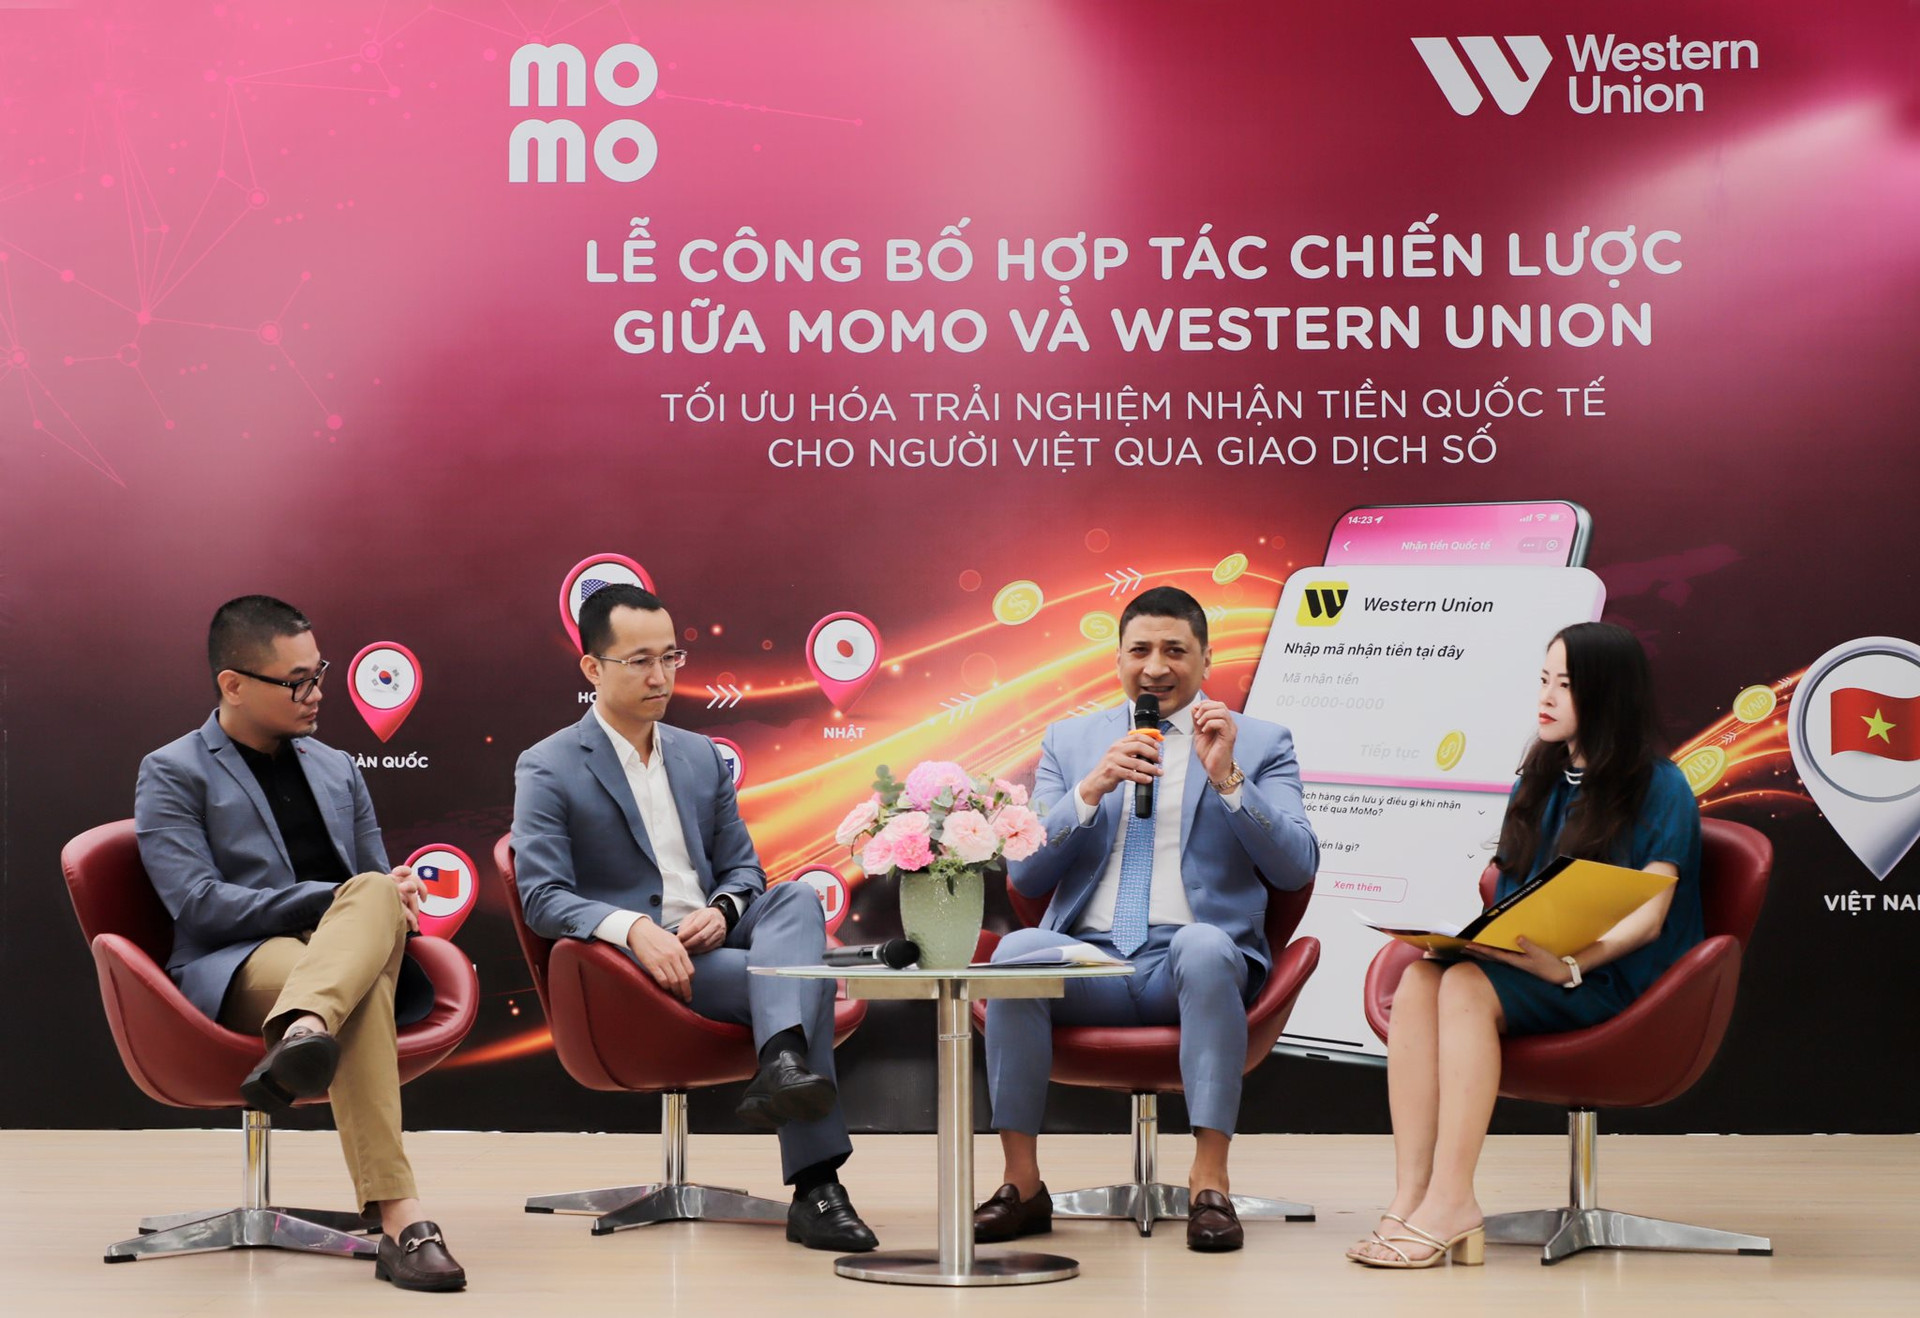 “Kỳ lân” MoMo hợp tác Western Union cung cấp dịch vụ giúp người dùng Việt nhận tiền từ nước ngoài chỉ trong 1 phút - Ảnh 2.